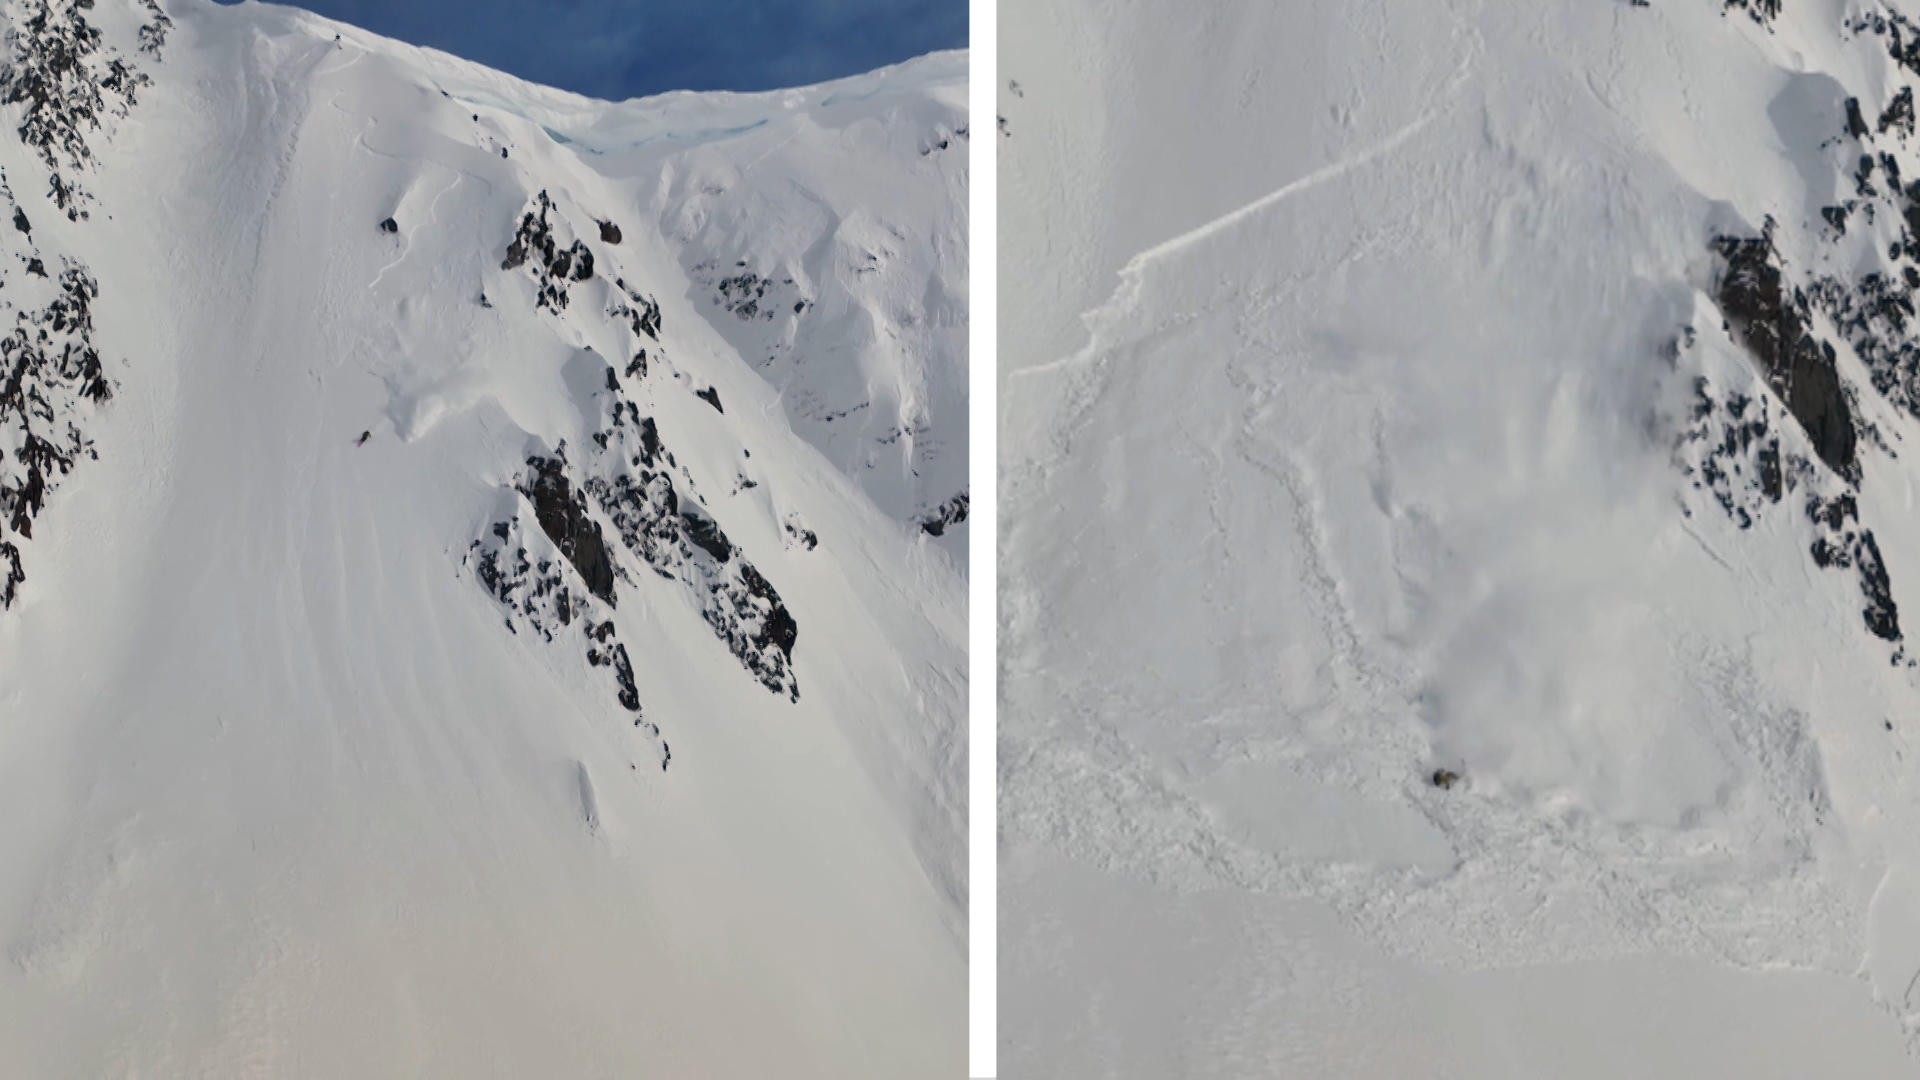 ¡La pendiente se convierte en un sueño!  ¡Una avalancha que arrastró a los esquiadores de repente sacude la nieve!